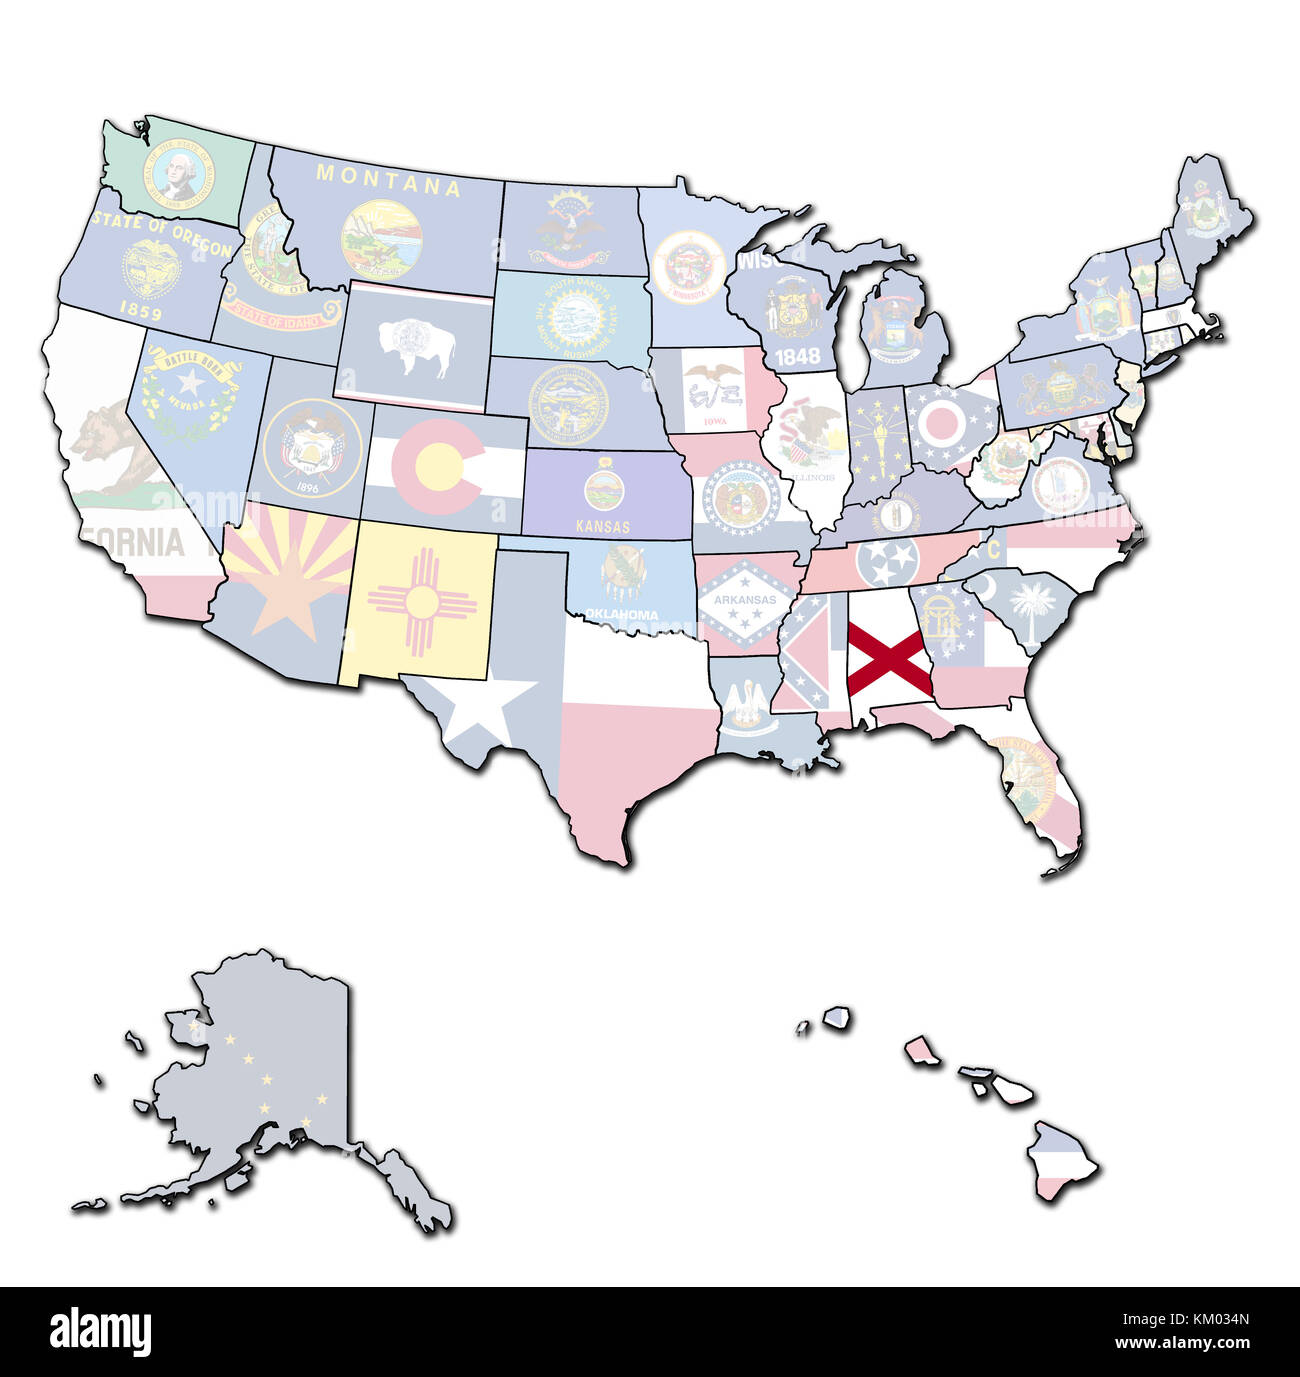 Alabama sulla mappa di isolato di stati uniti d'America con i confini di stato Foto Stock